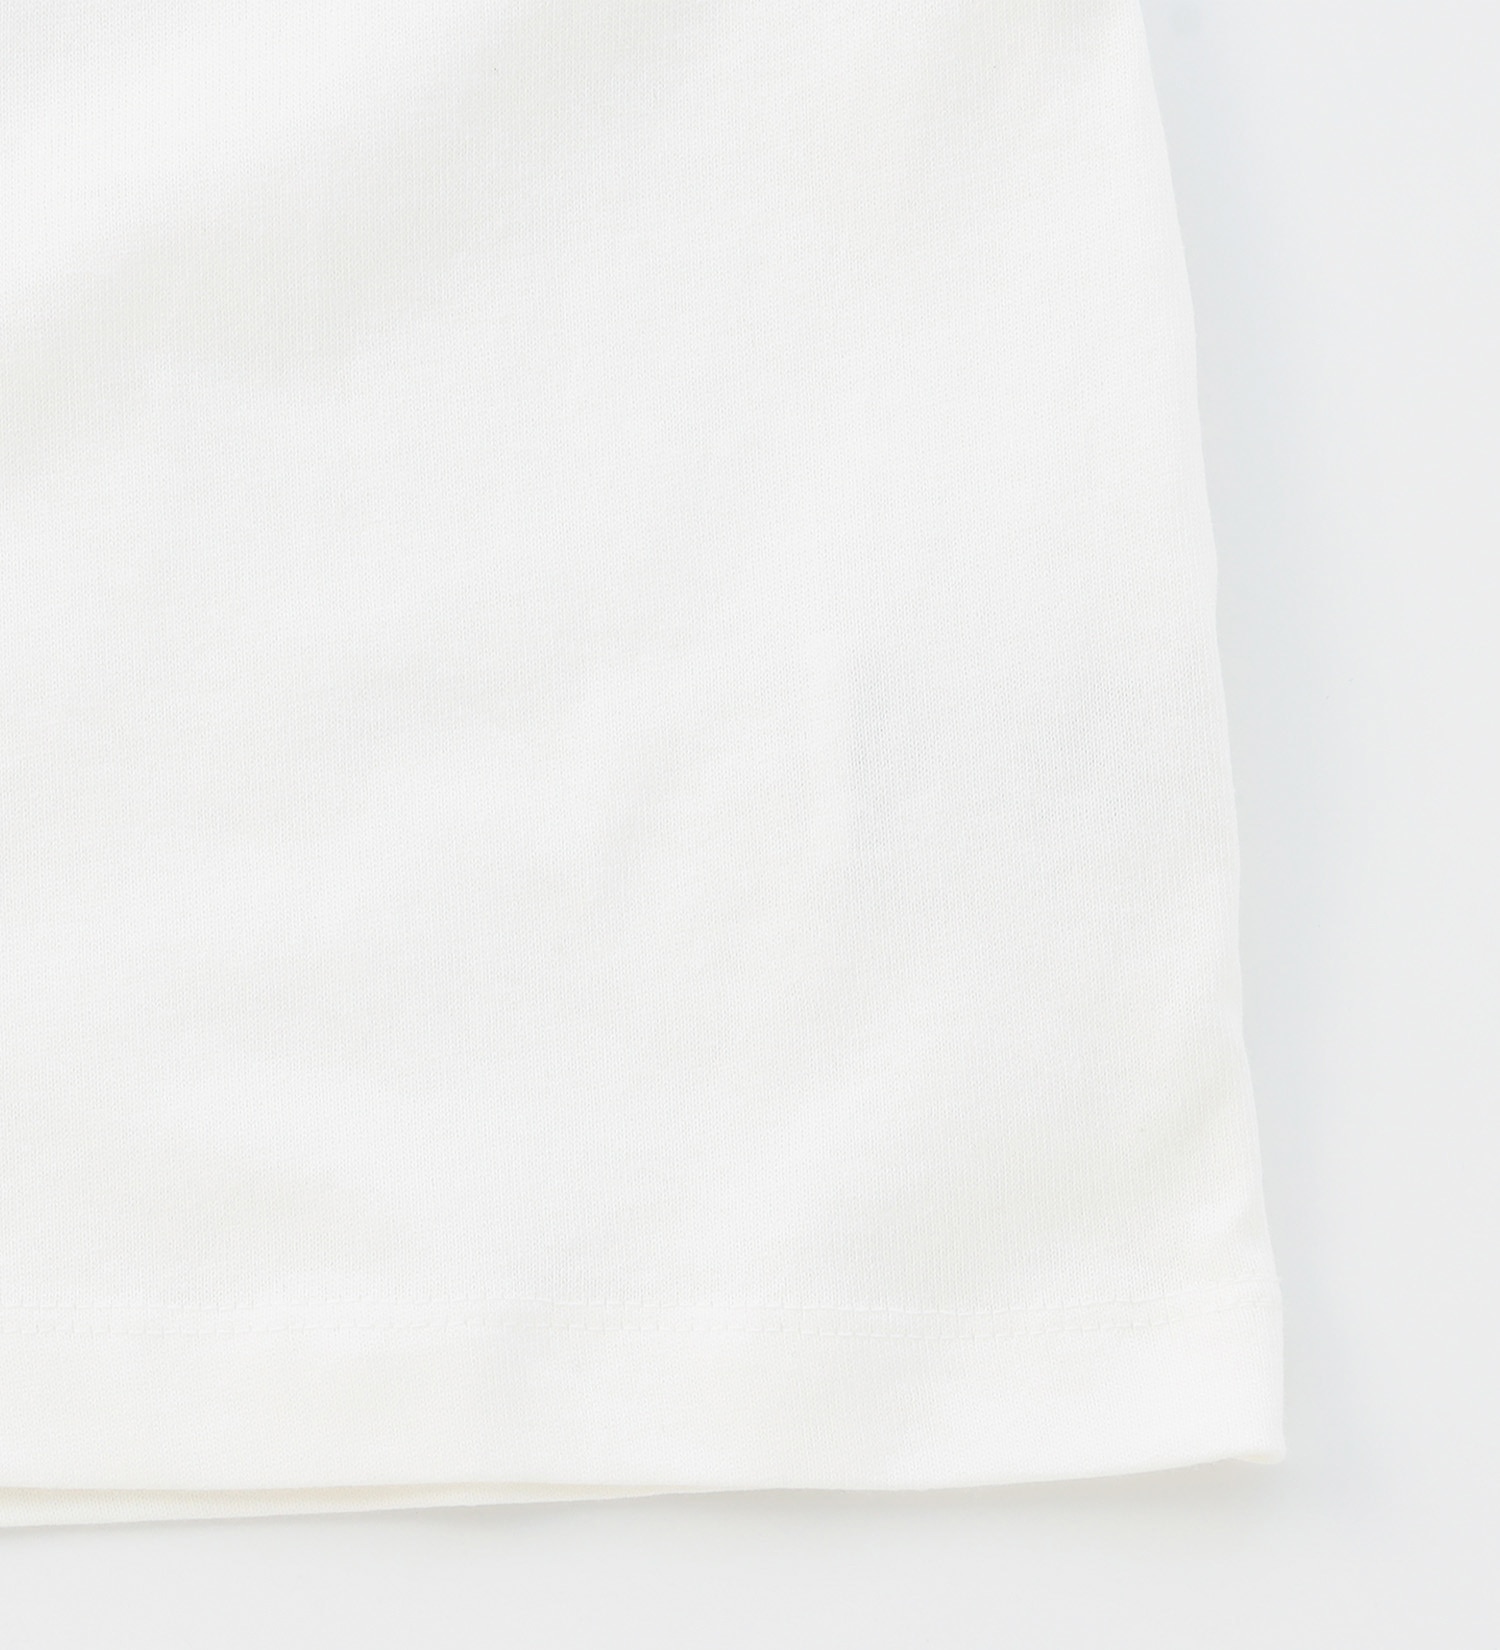 EDWIN(エドウイン)の【BLACKFRIDAY】手書き風プリントTシャツ 半袖（キャンプ）【アウトレット店舗・WEB限定】|トップス/Tシャツ/カットソー/レディース|ホワイト